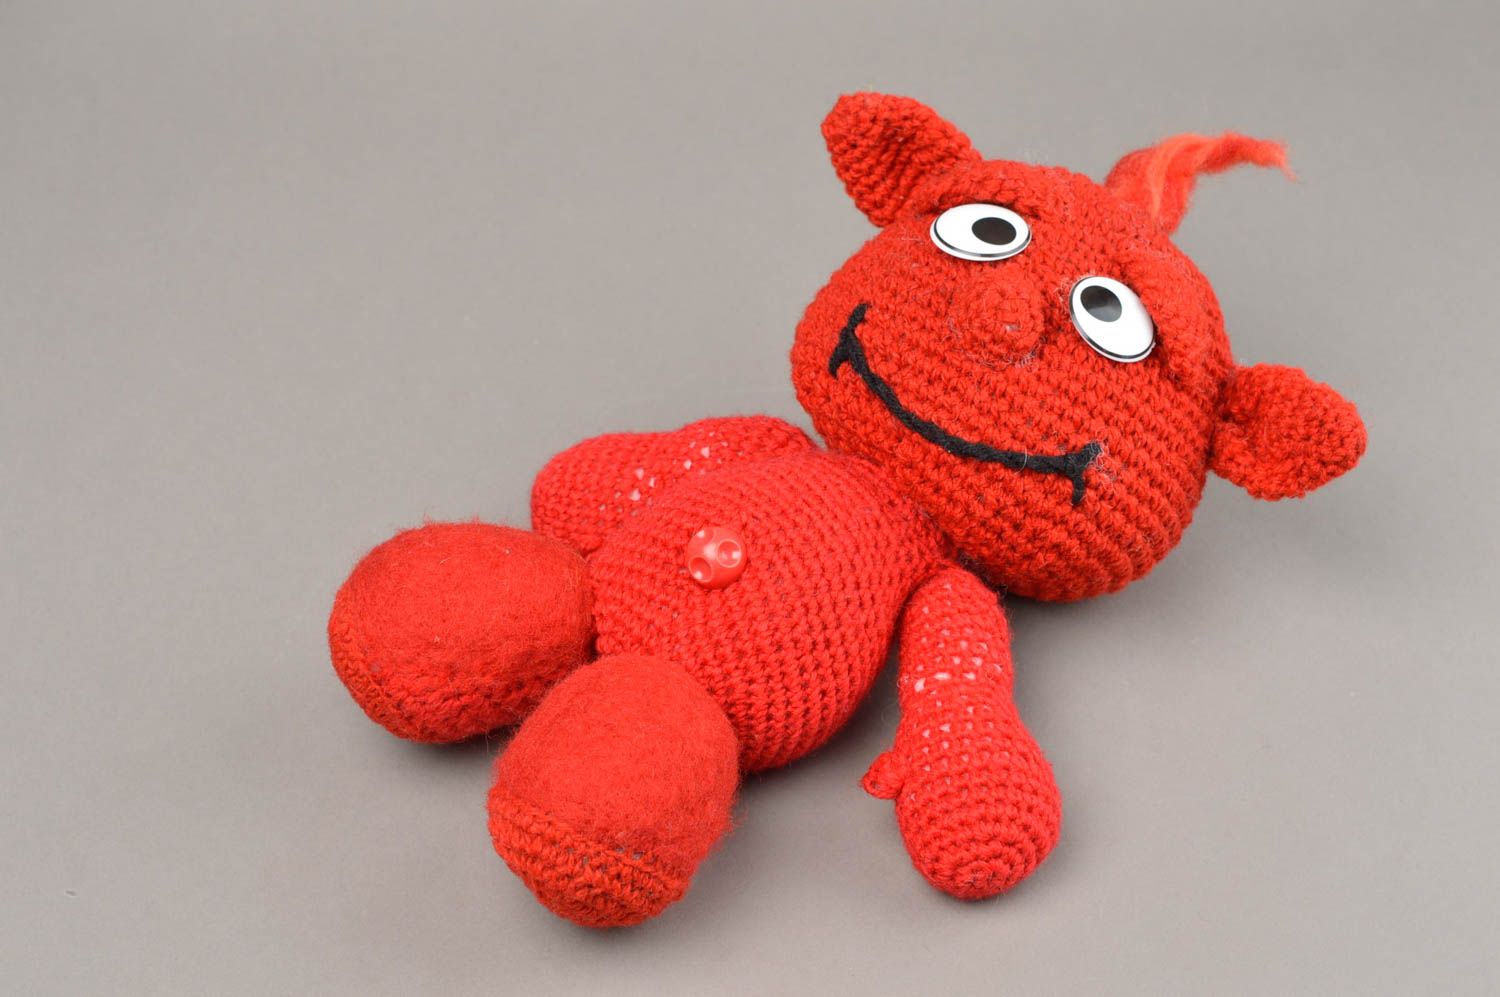 Красная мягкая игрушка ручной работы вязаная крючком красивая для ребенка фото 3